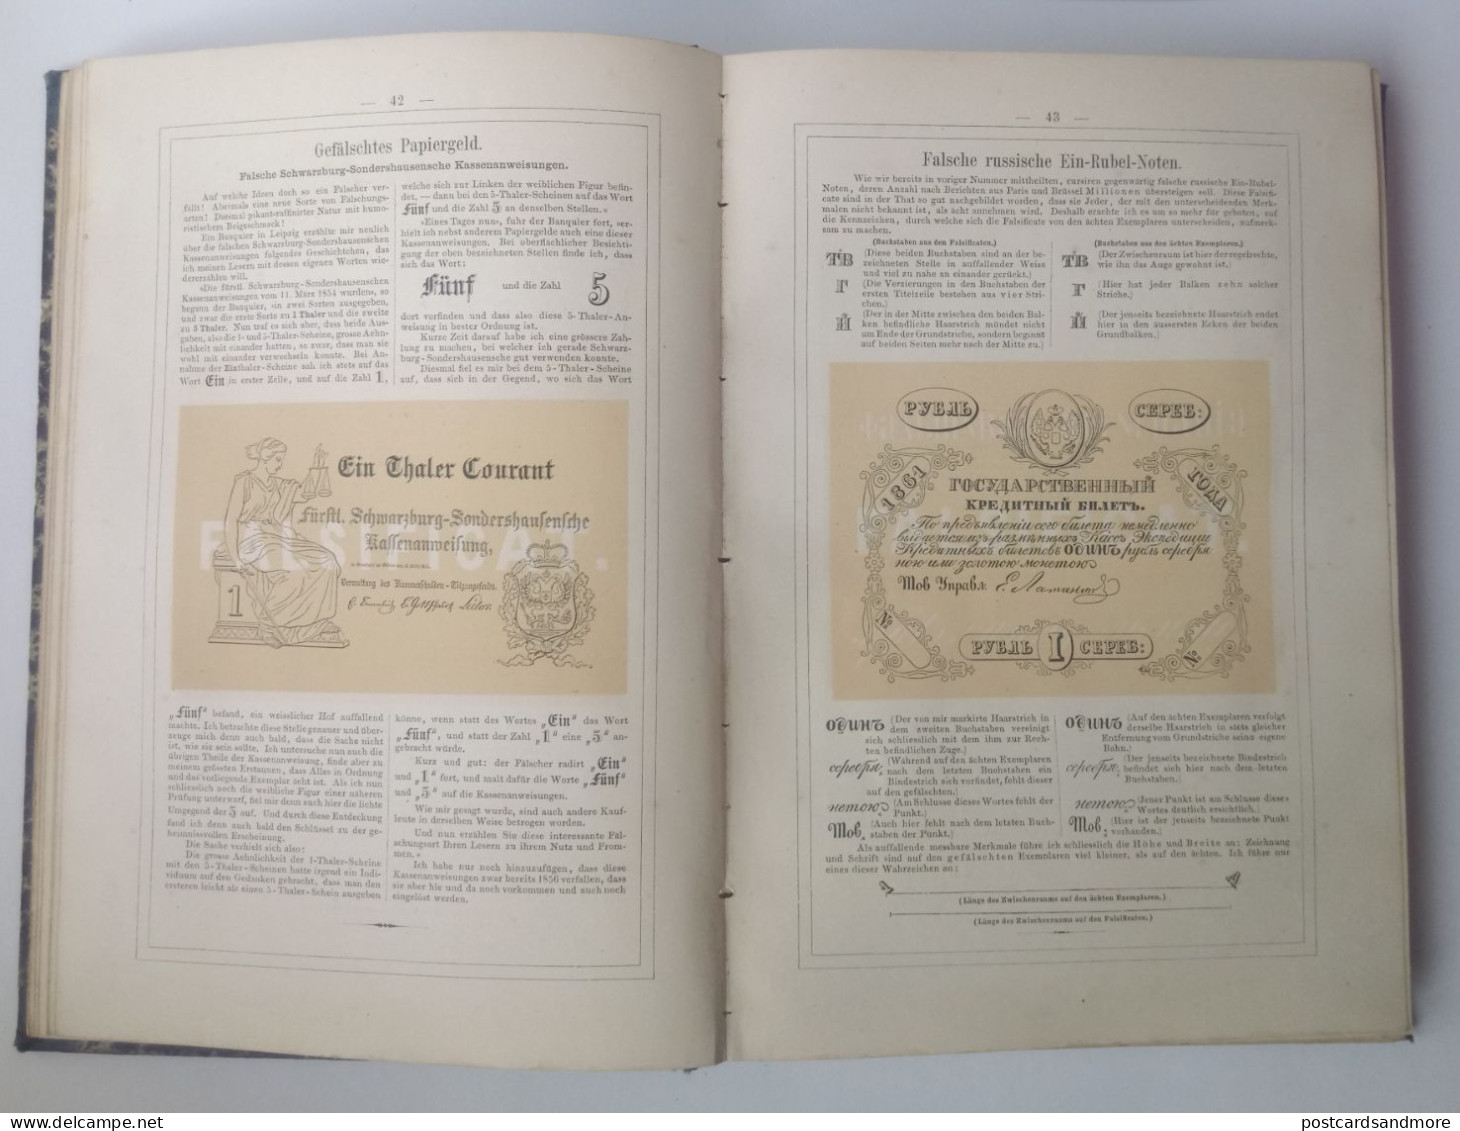 Illustrirter Anzeiger über gefälschtes Papiergeld und unächte Münzen 1865-1869 Adolf Henze Leipzig